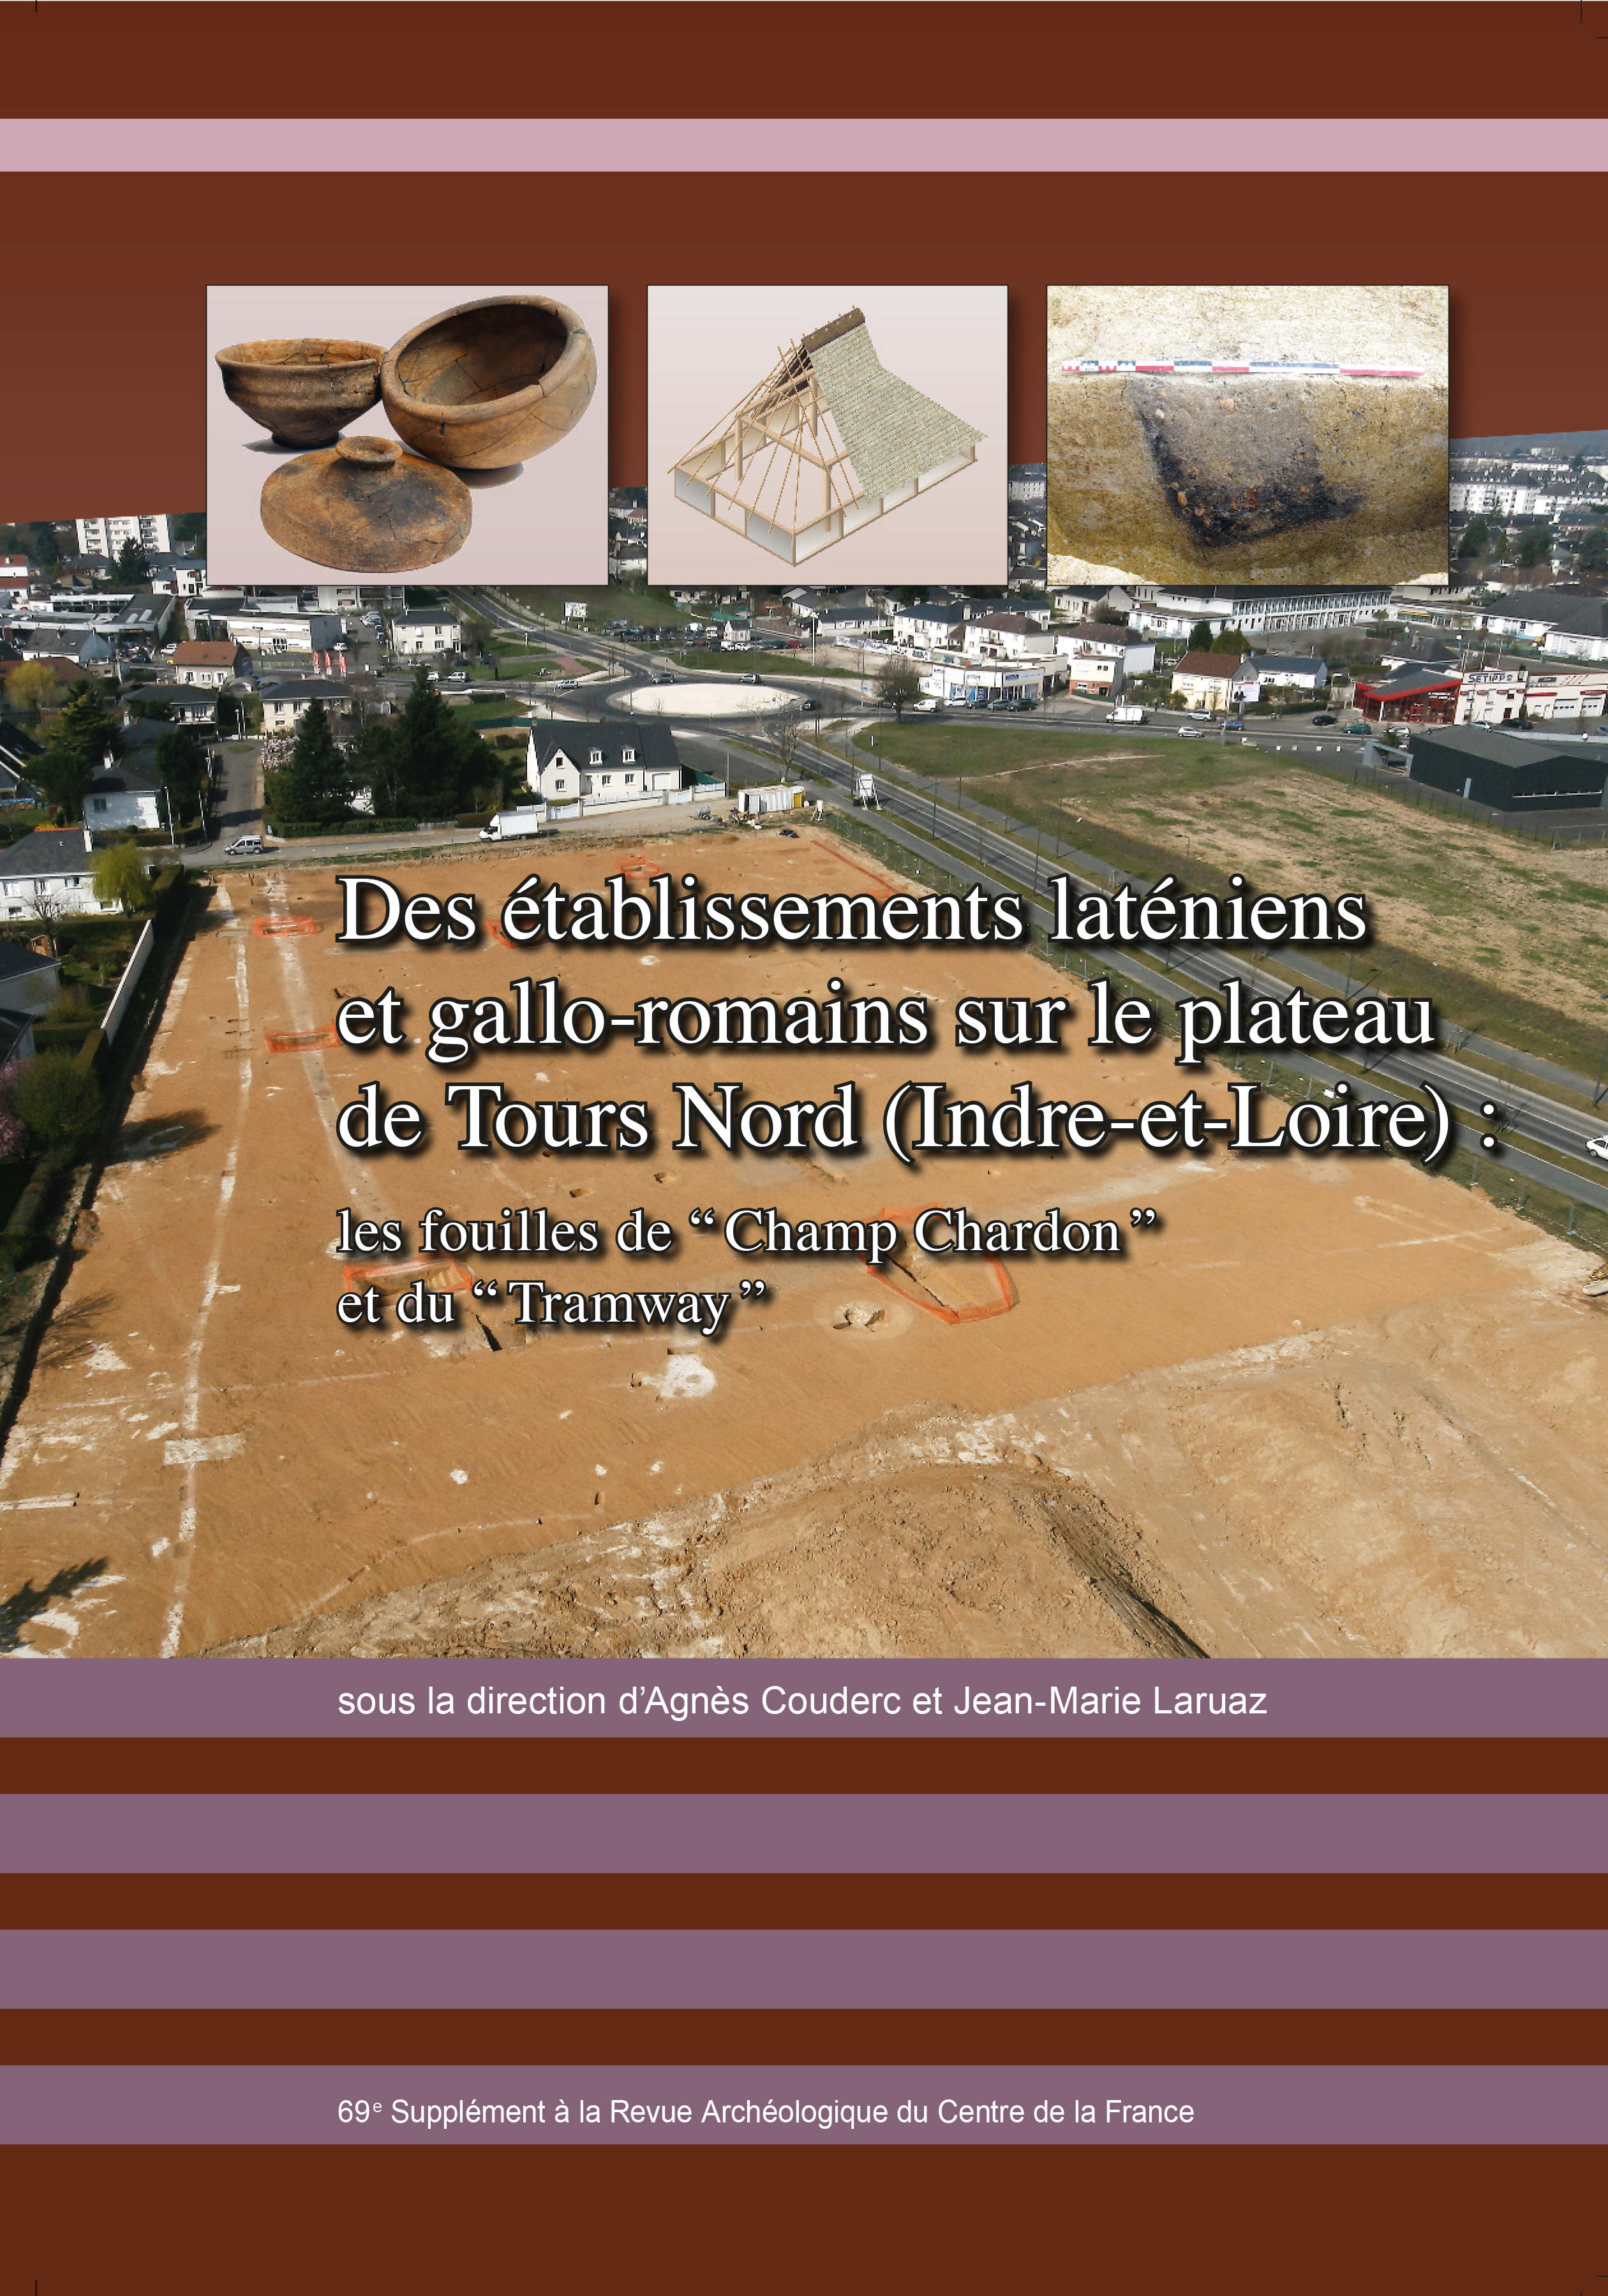 Des établissements laténiens et gallo-romains sur le plateau de Tours Nord (Indre-et-Loire) : les fouilles de “Champ Chardon” et du “Tramway”, (Suppl. RACF 69), 2018, 320 p.